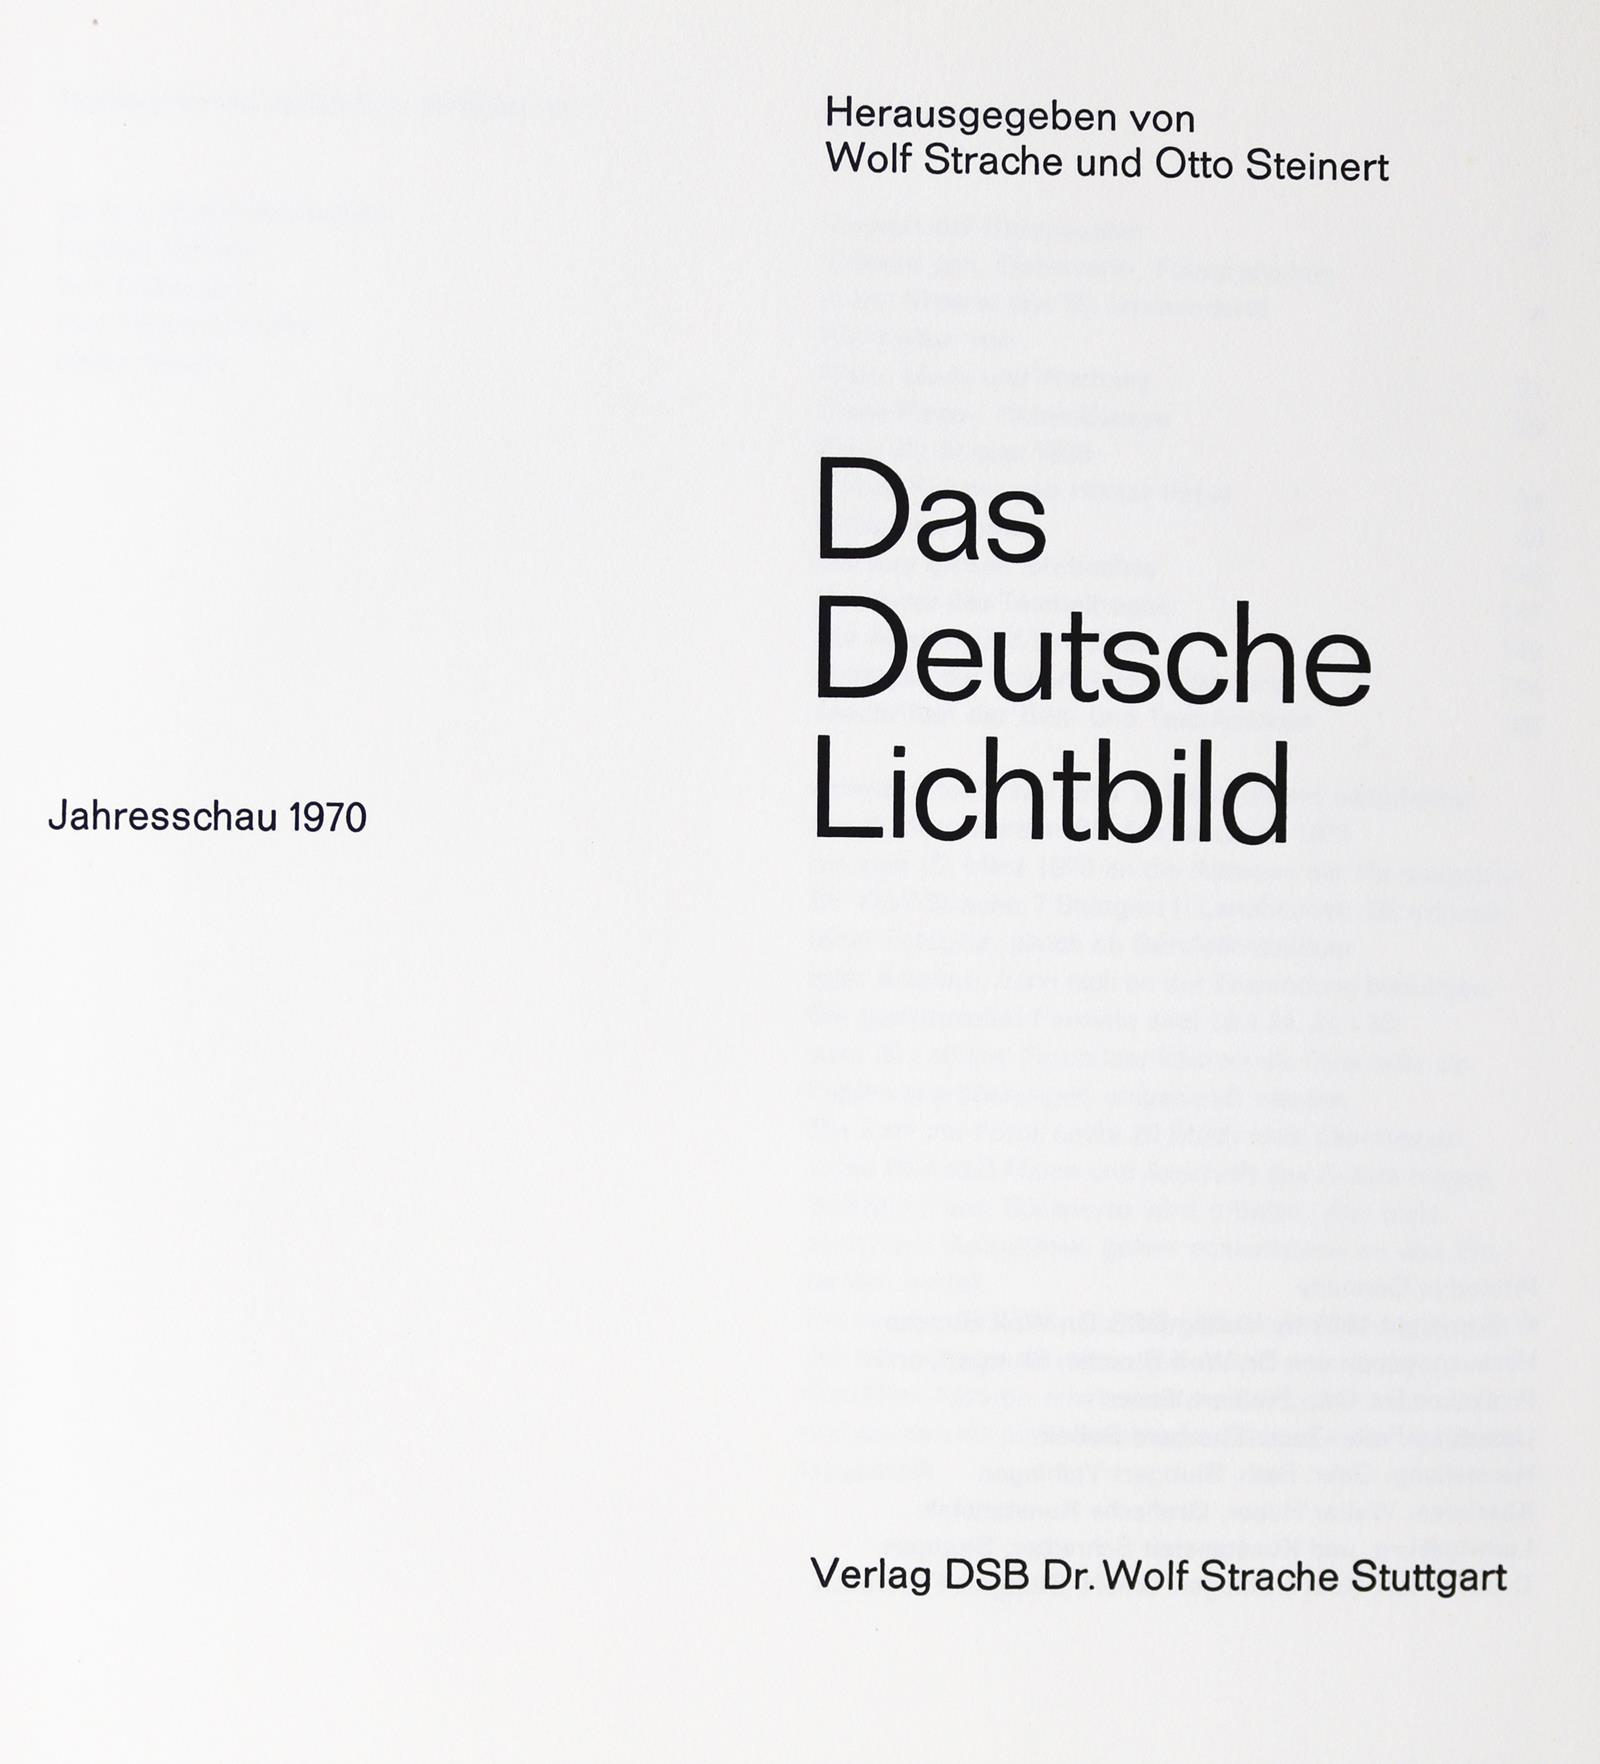 Deutsche Lichtbild, Das. | Bild Nr.2